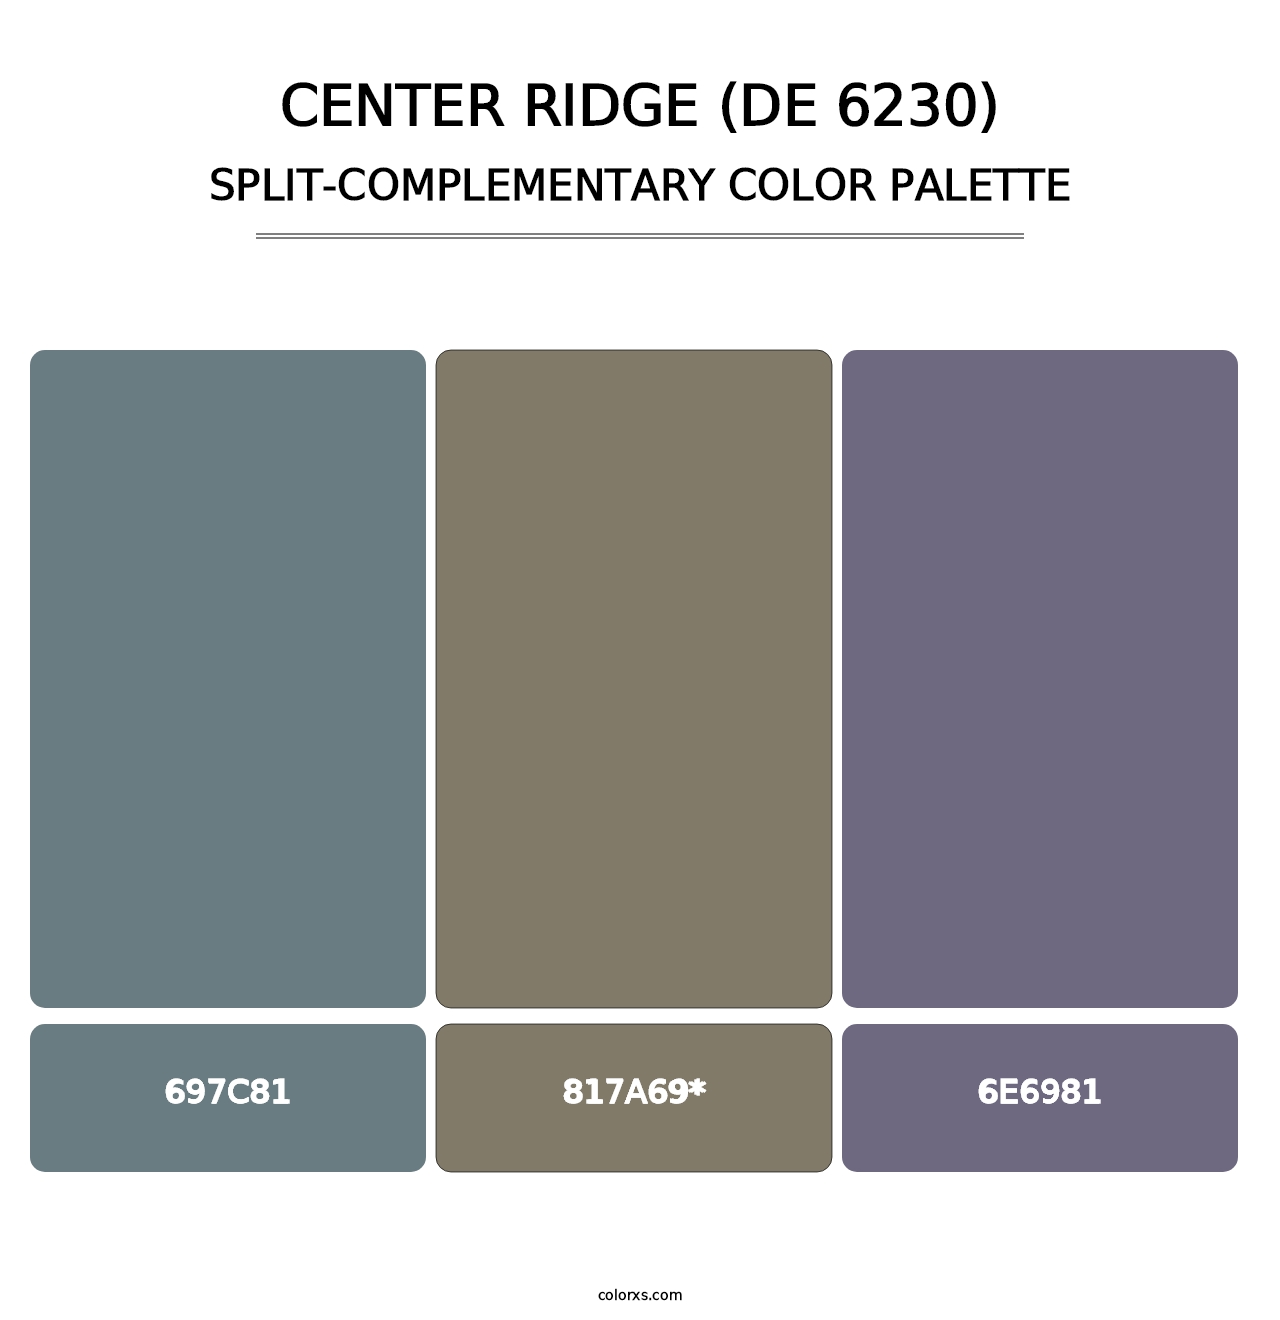 Center Ridge (DE 6230) - Split-Complementary Color Palette